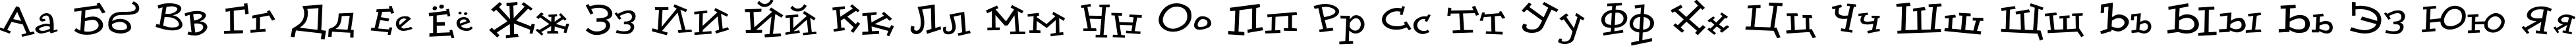 Пример написания русского алфавита шрифтом DoloresCyr Light Bold